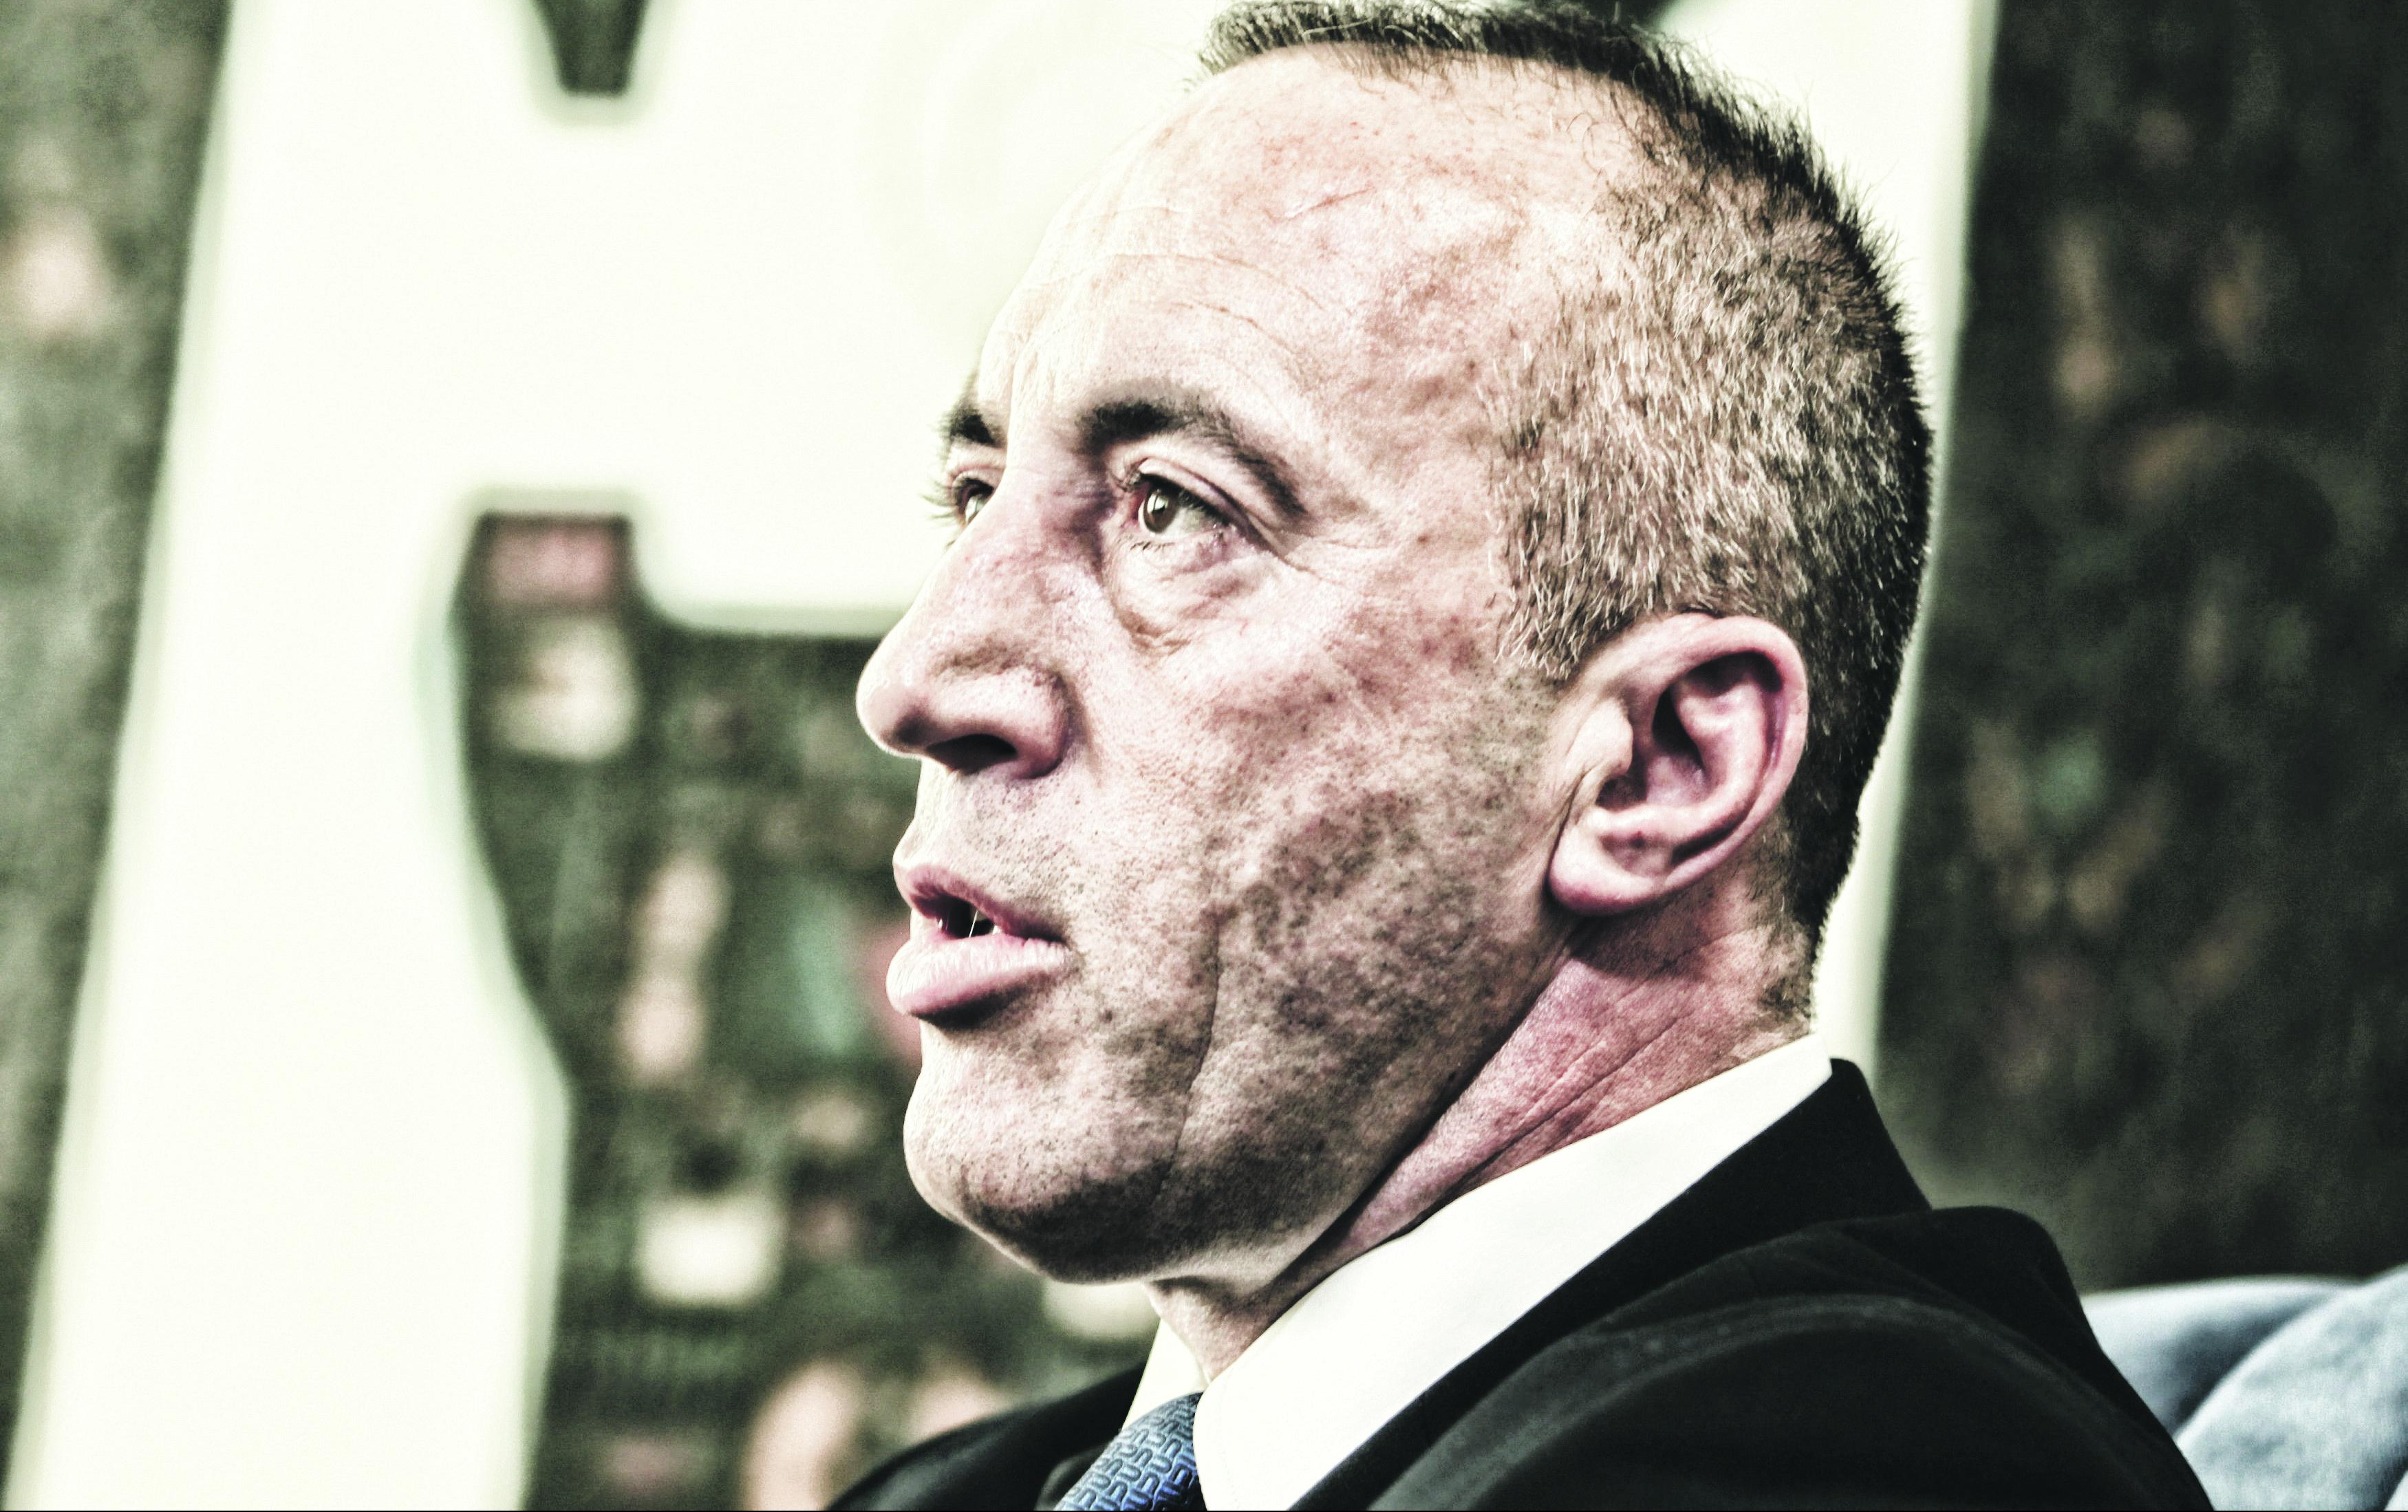 PRIPADNICI KBS NA SLOBODI! Nakon ispitivanja, nastavili put, Haradinaj plakao da ih srpska policija pusti